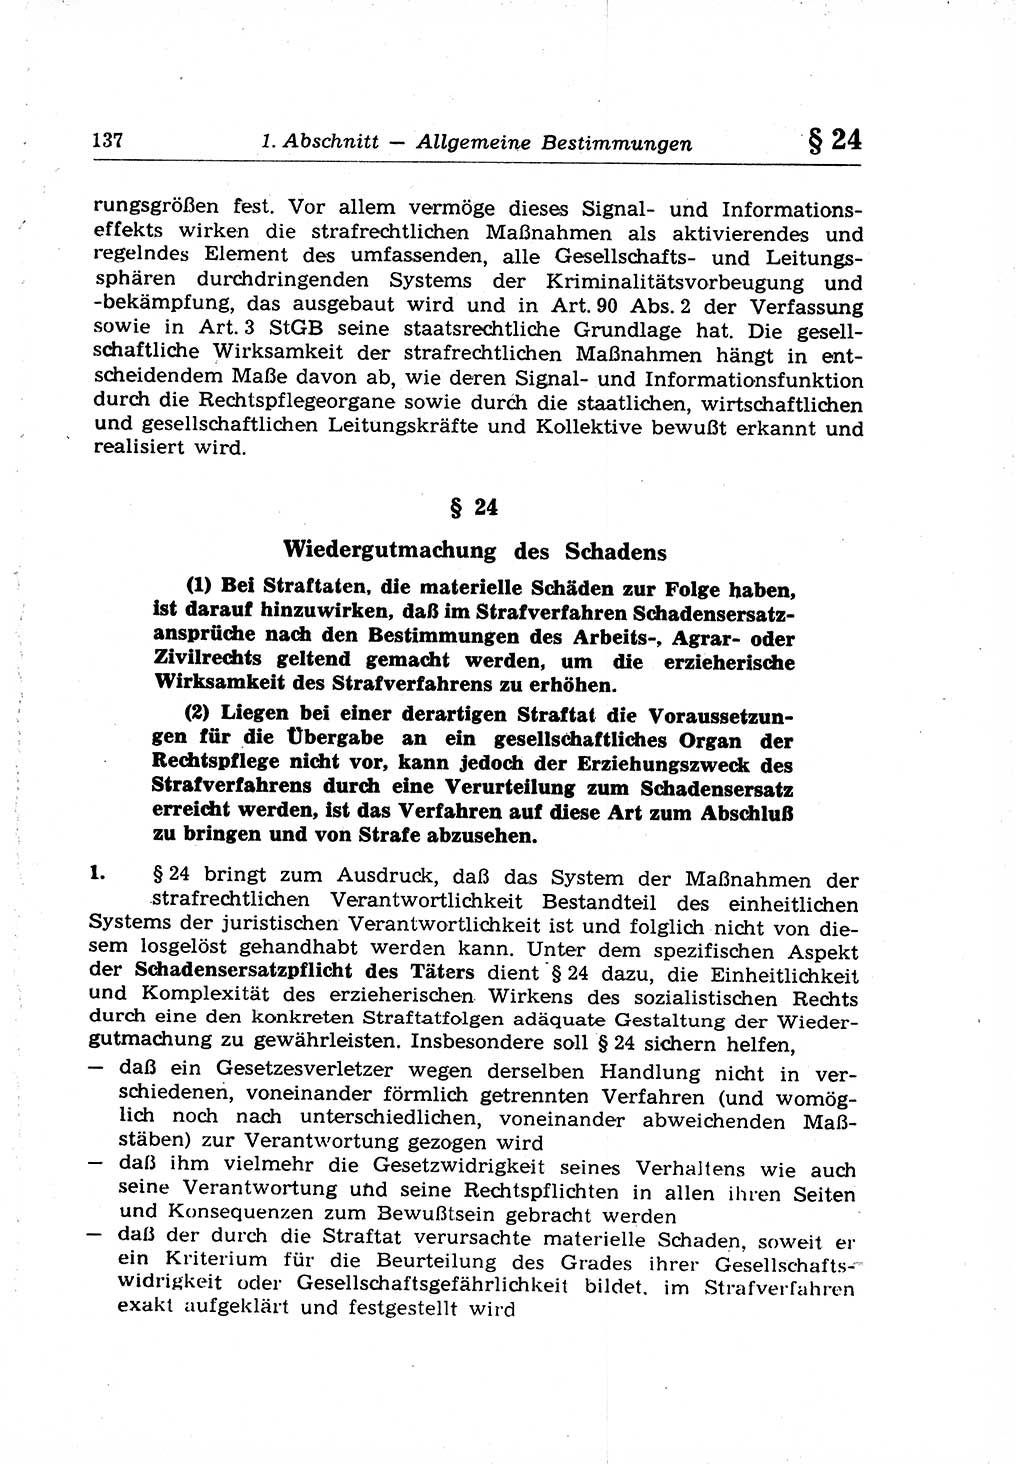 Strafrecht der Deutschen Demokratischen Republik (DDR), Lehrkommentar zum Strafgesetzbuch (StGB), Allgemeiner Teil 1969, Seite 137 (Strafr. DDR Lehrkomm. StGB AT 1969, S. 137)